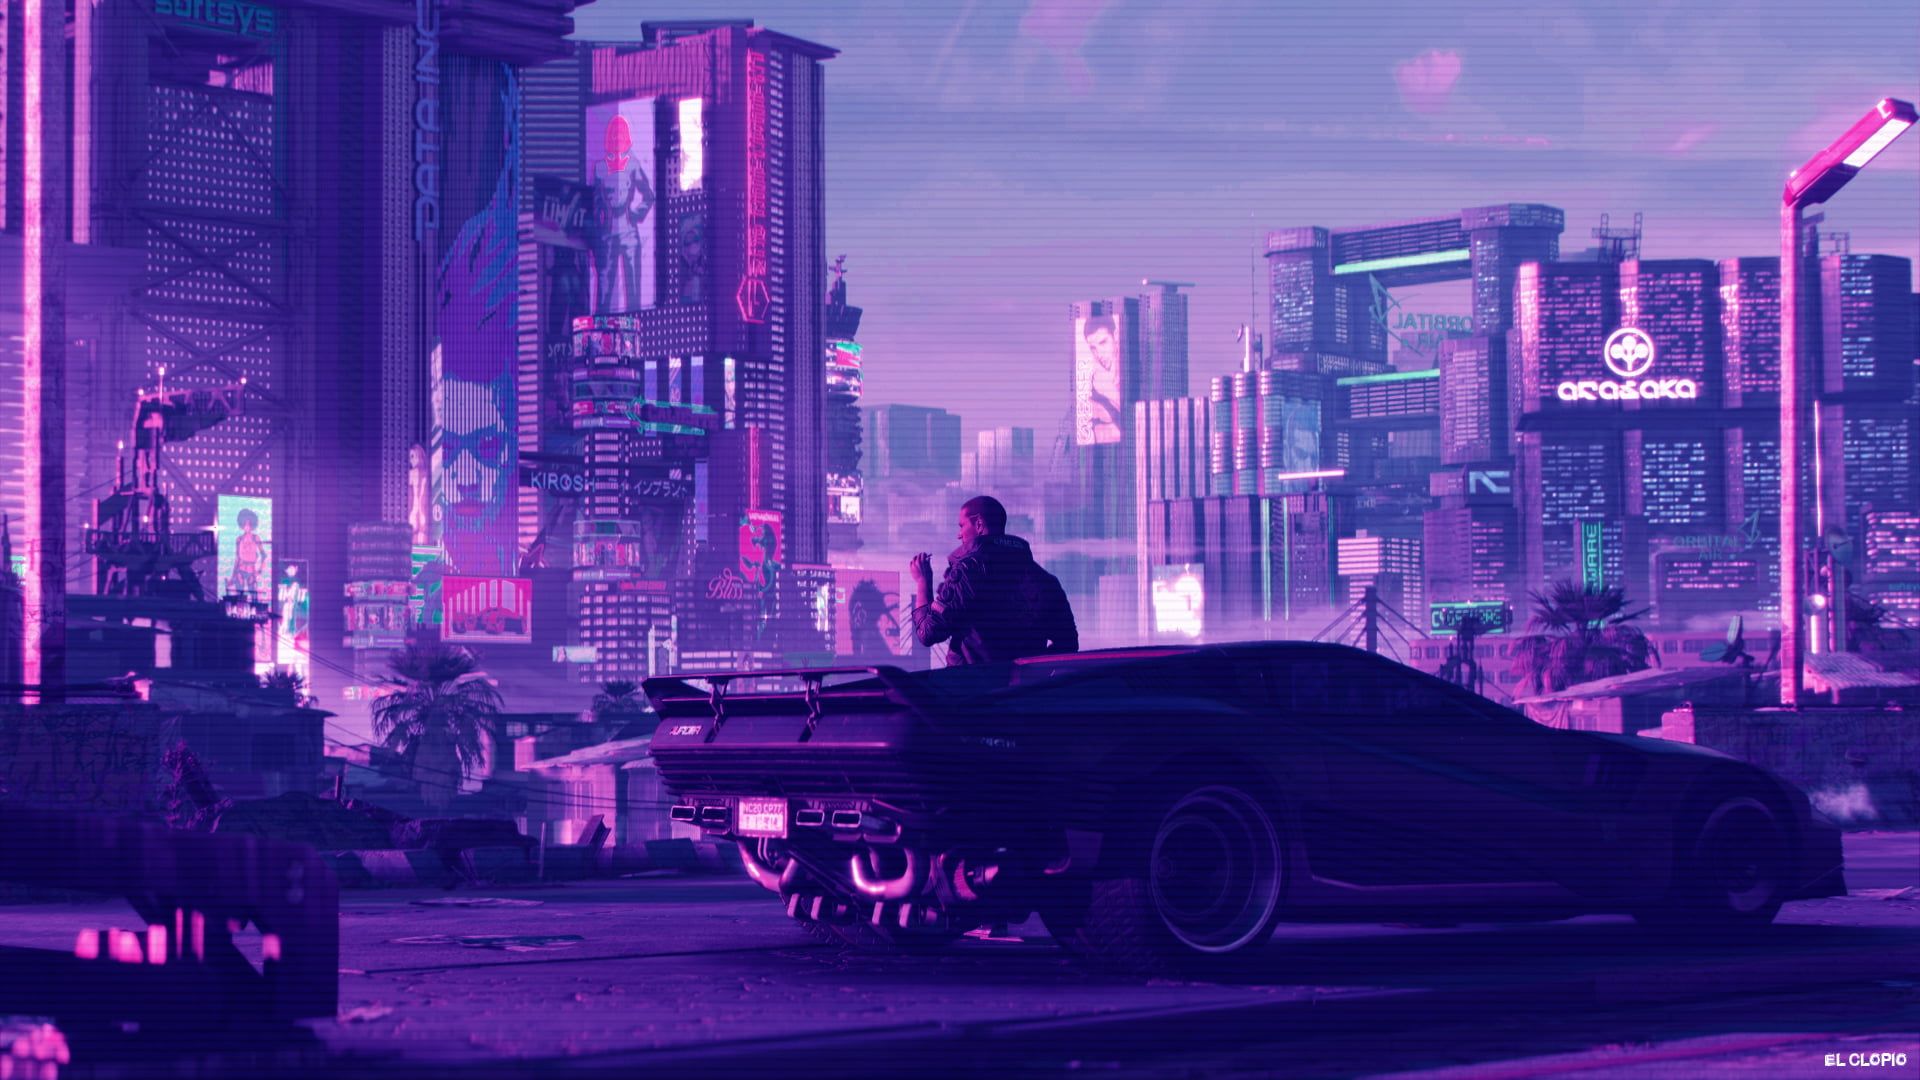 Cyberpunk 2077 #synthwave #car digital art #vehicle futuristic city P # wallpaper #hdwallpaper #desktop. Futuristic city, City wallpaper, Cyberpunk 2077